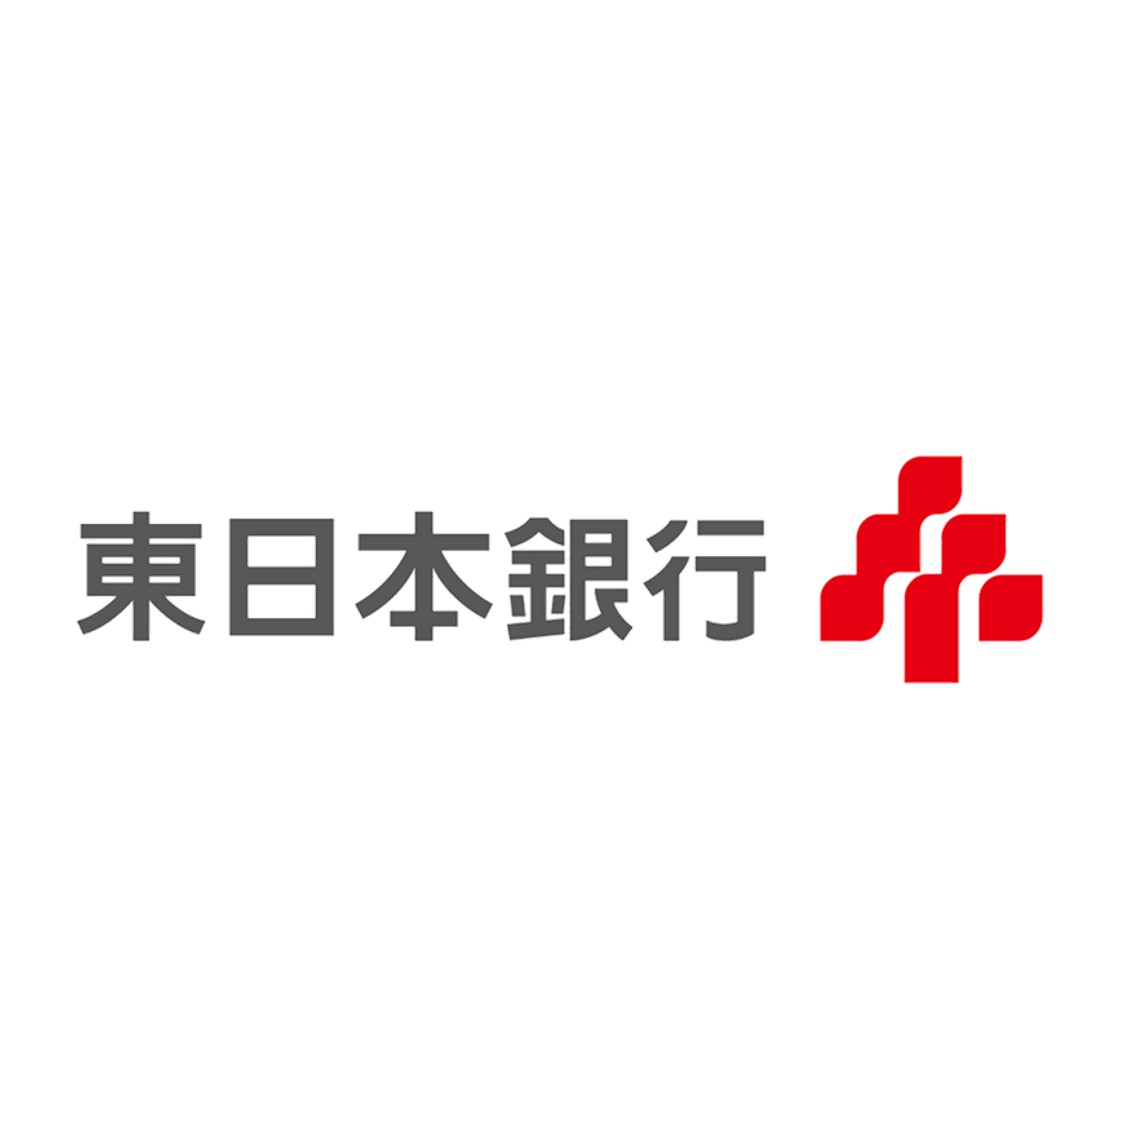 株式会社東日本銀行